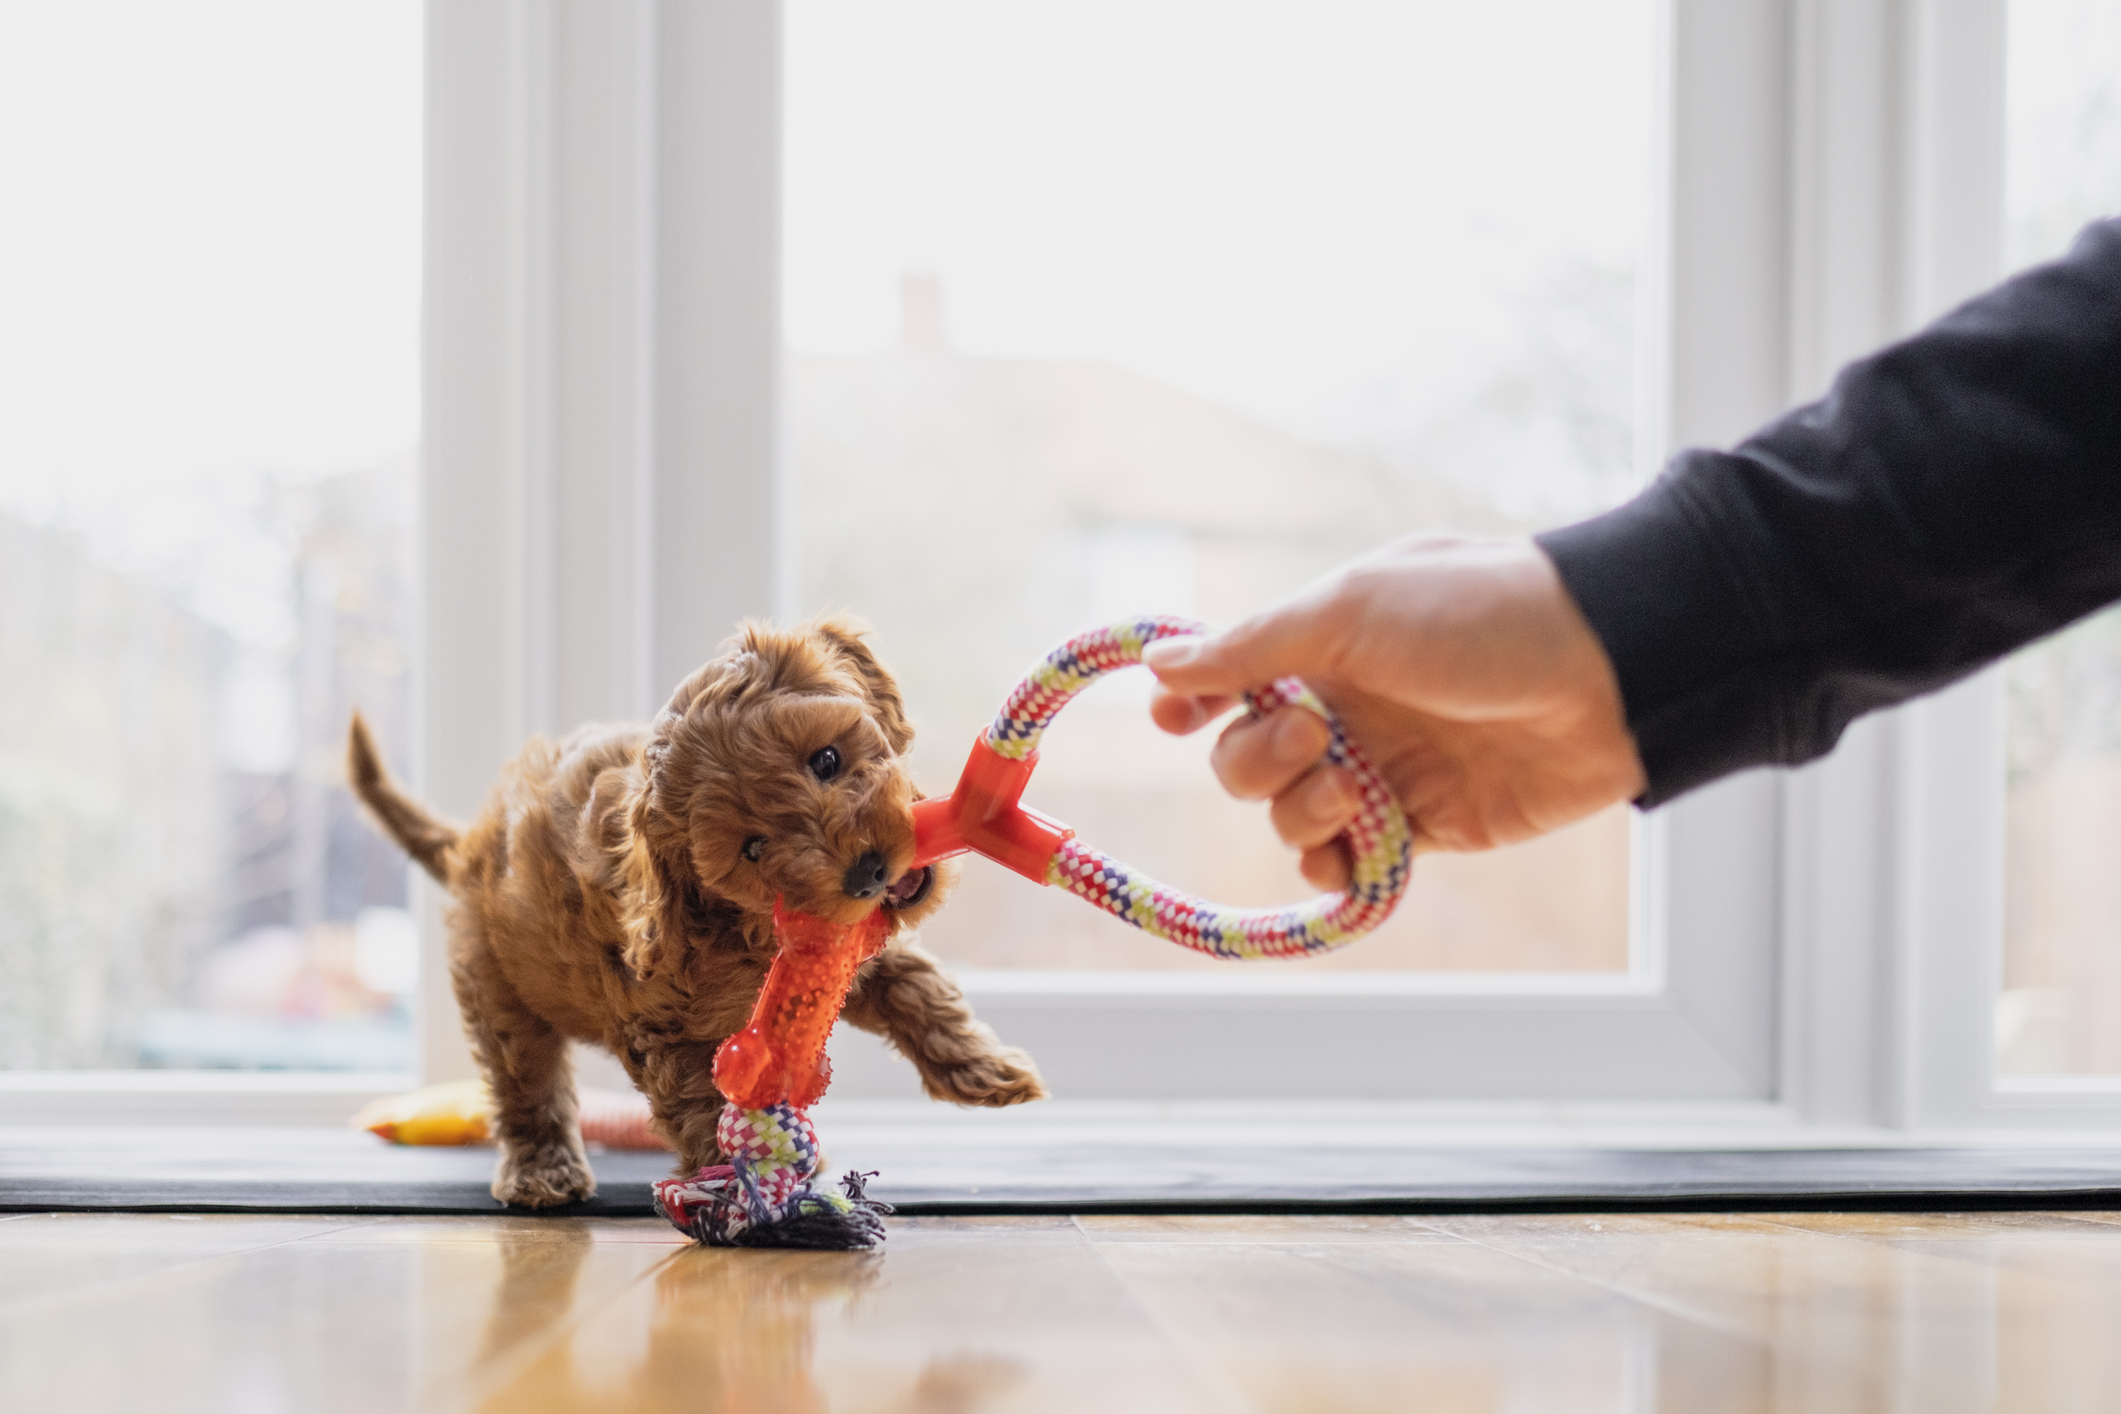 Em promoção! Interativo Cão Comida De Gato Tratar De Brinquedos Do